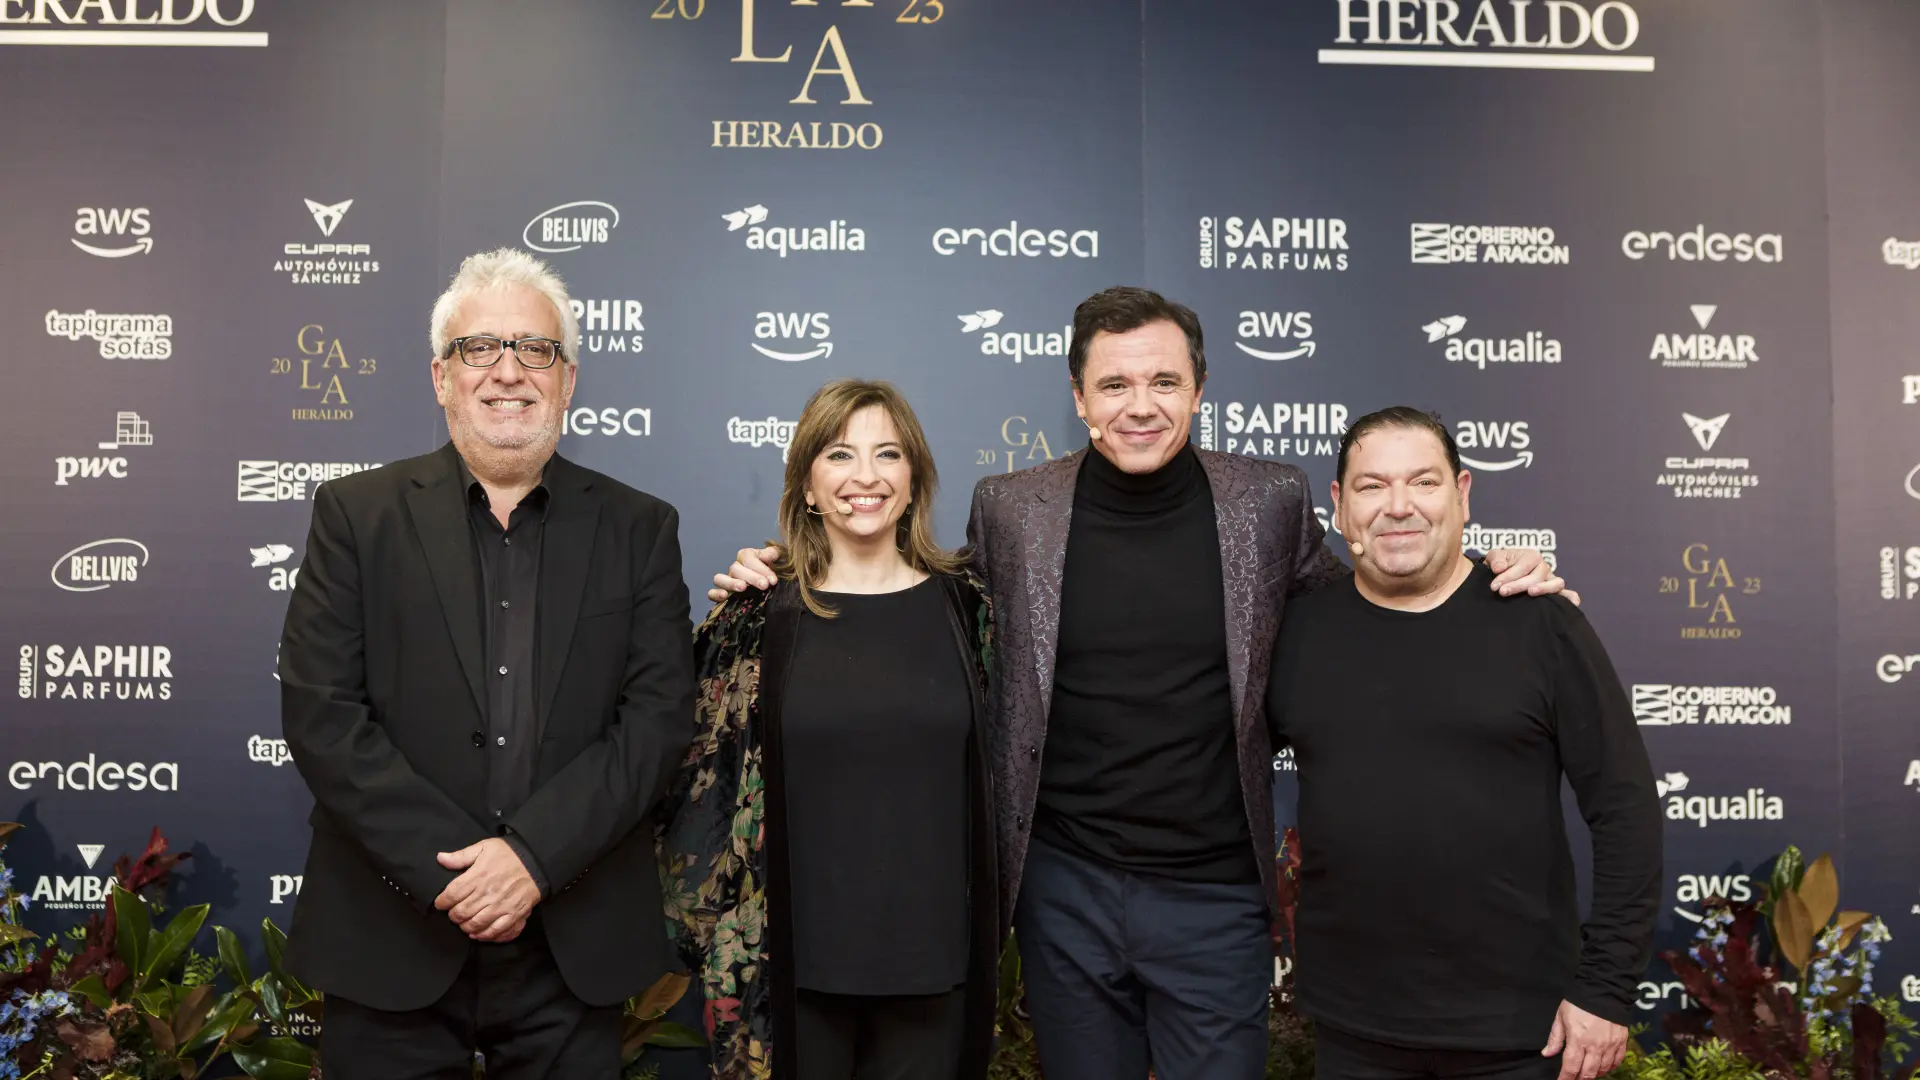 Los cómicos Leo Harlem, Marisol Aznar, Rafa Maza y Jorge Asín, encargados de conducir la gala.